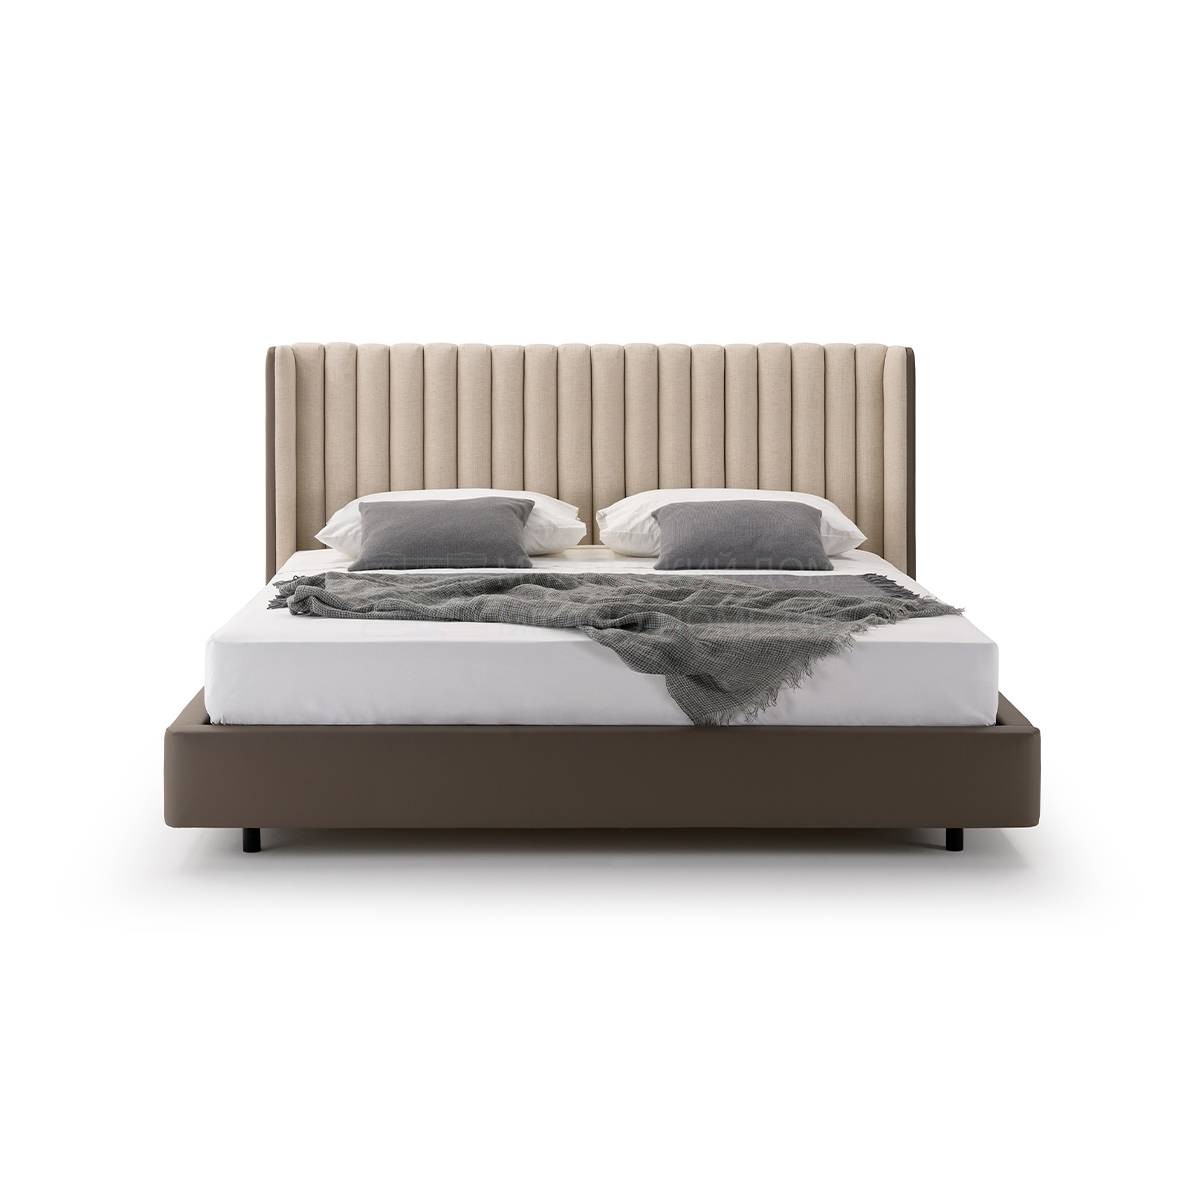 Двуспальная кровать Domus bed из Италии фабрики TURRI